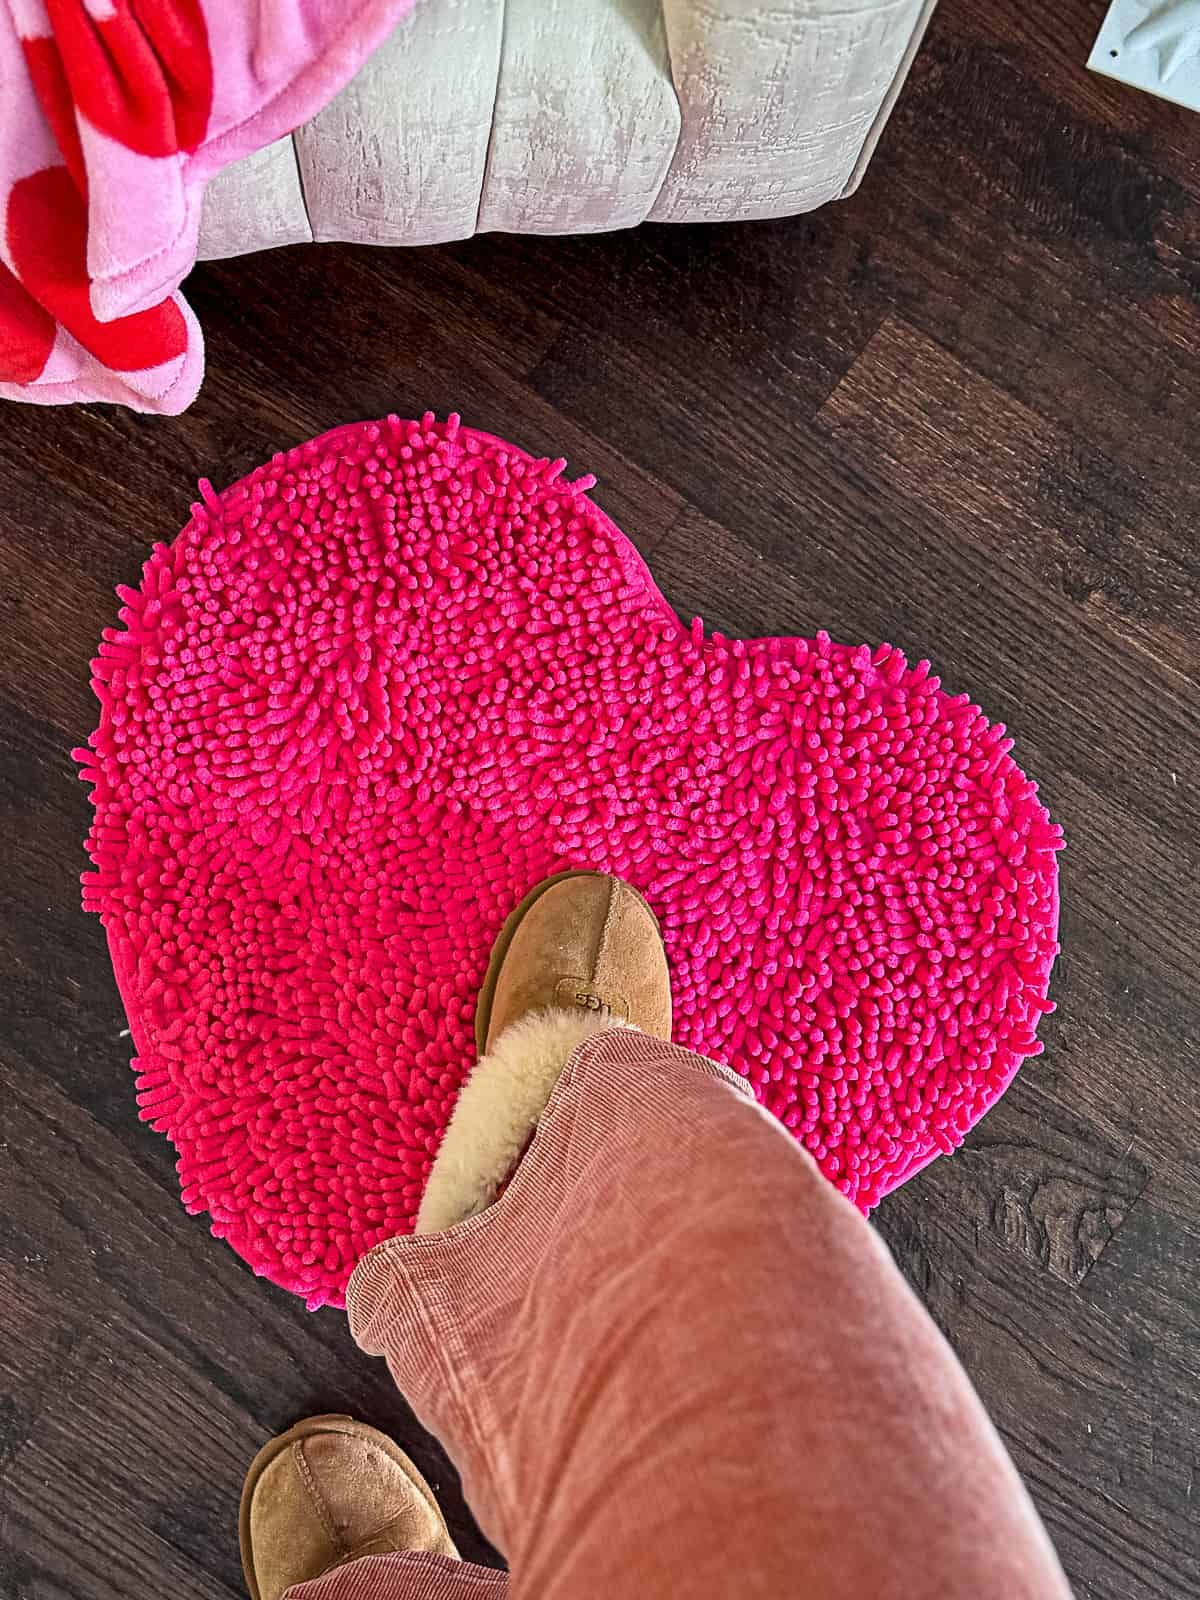 Heart shaped rug